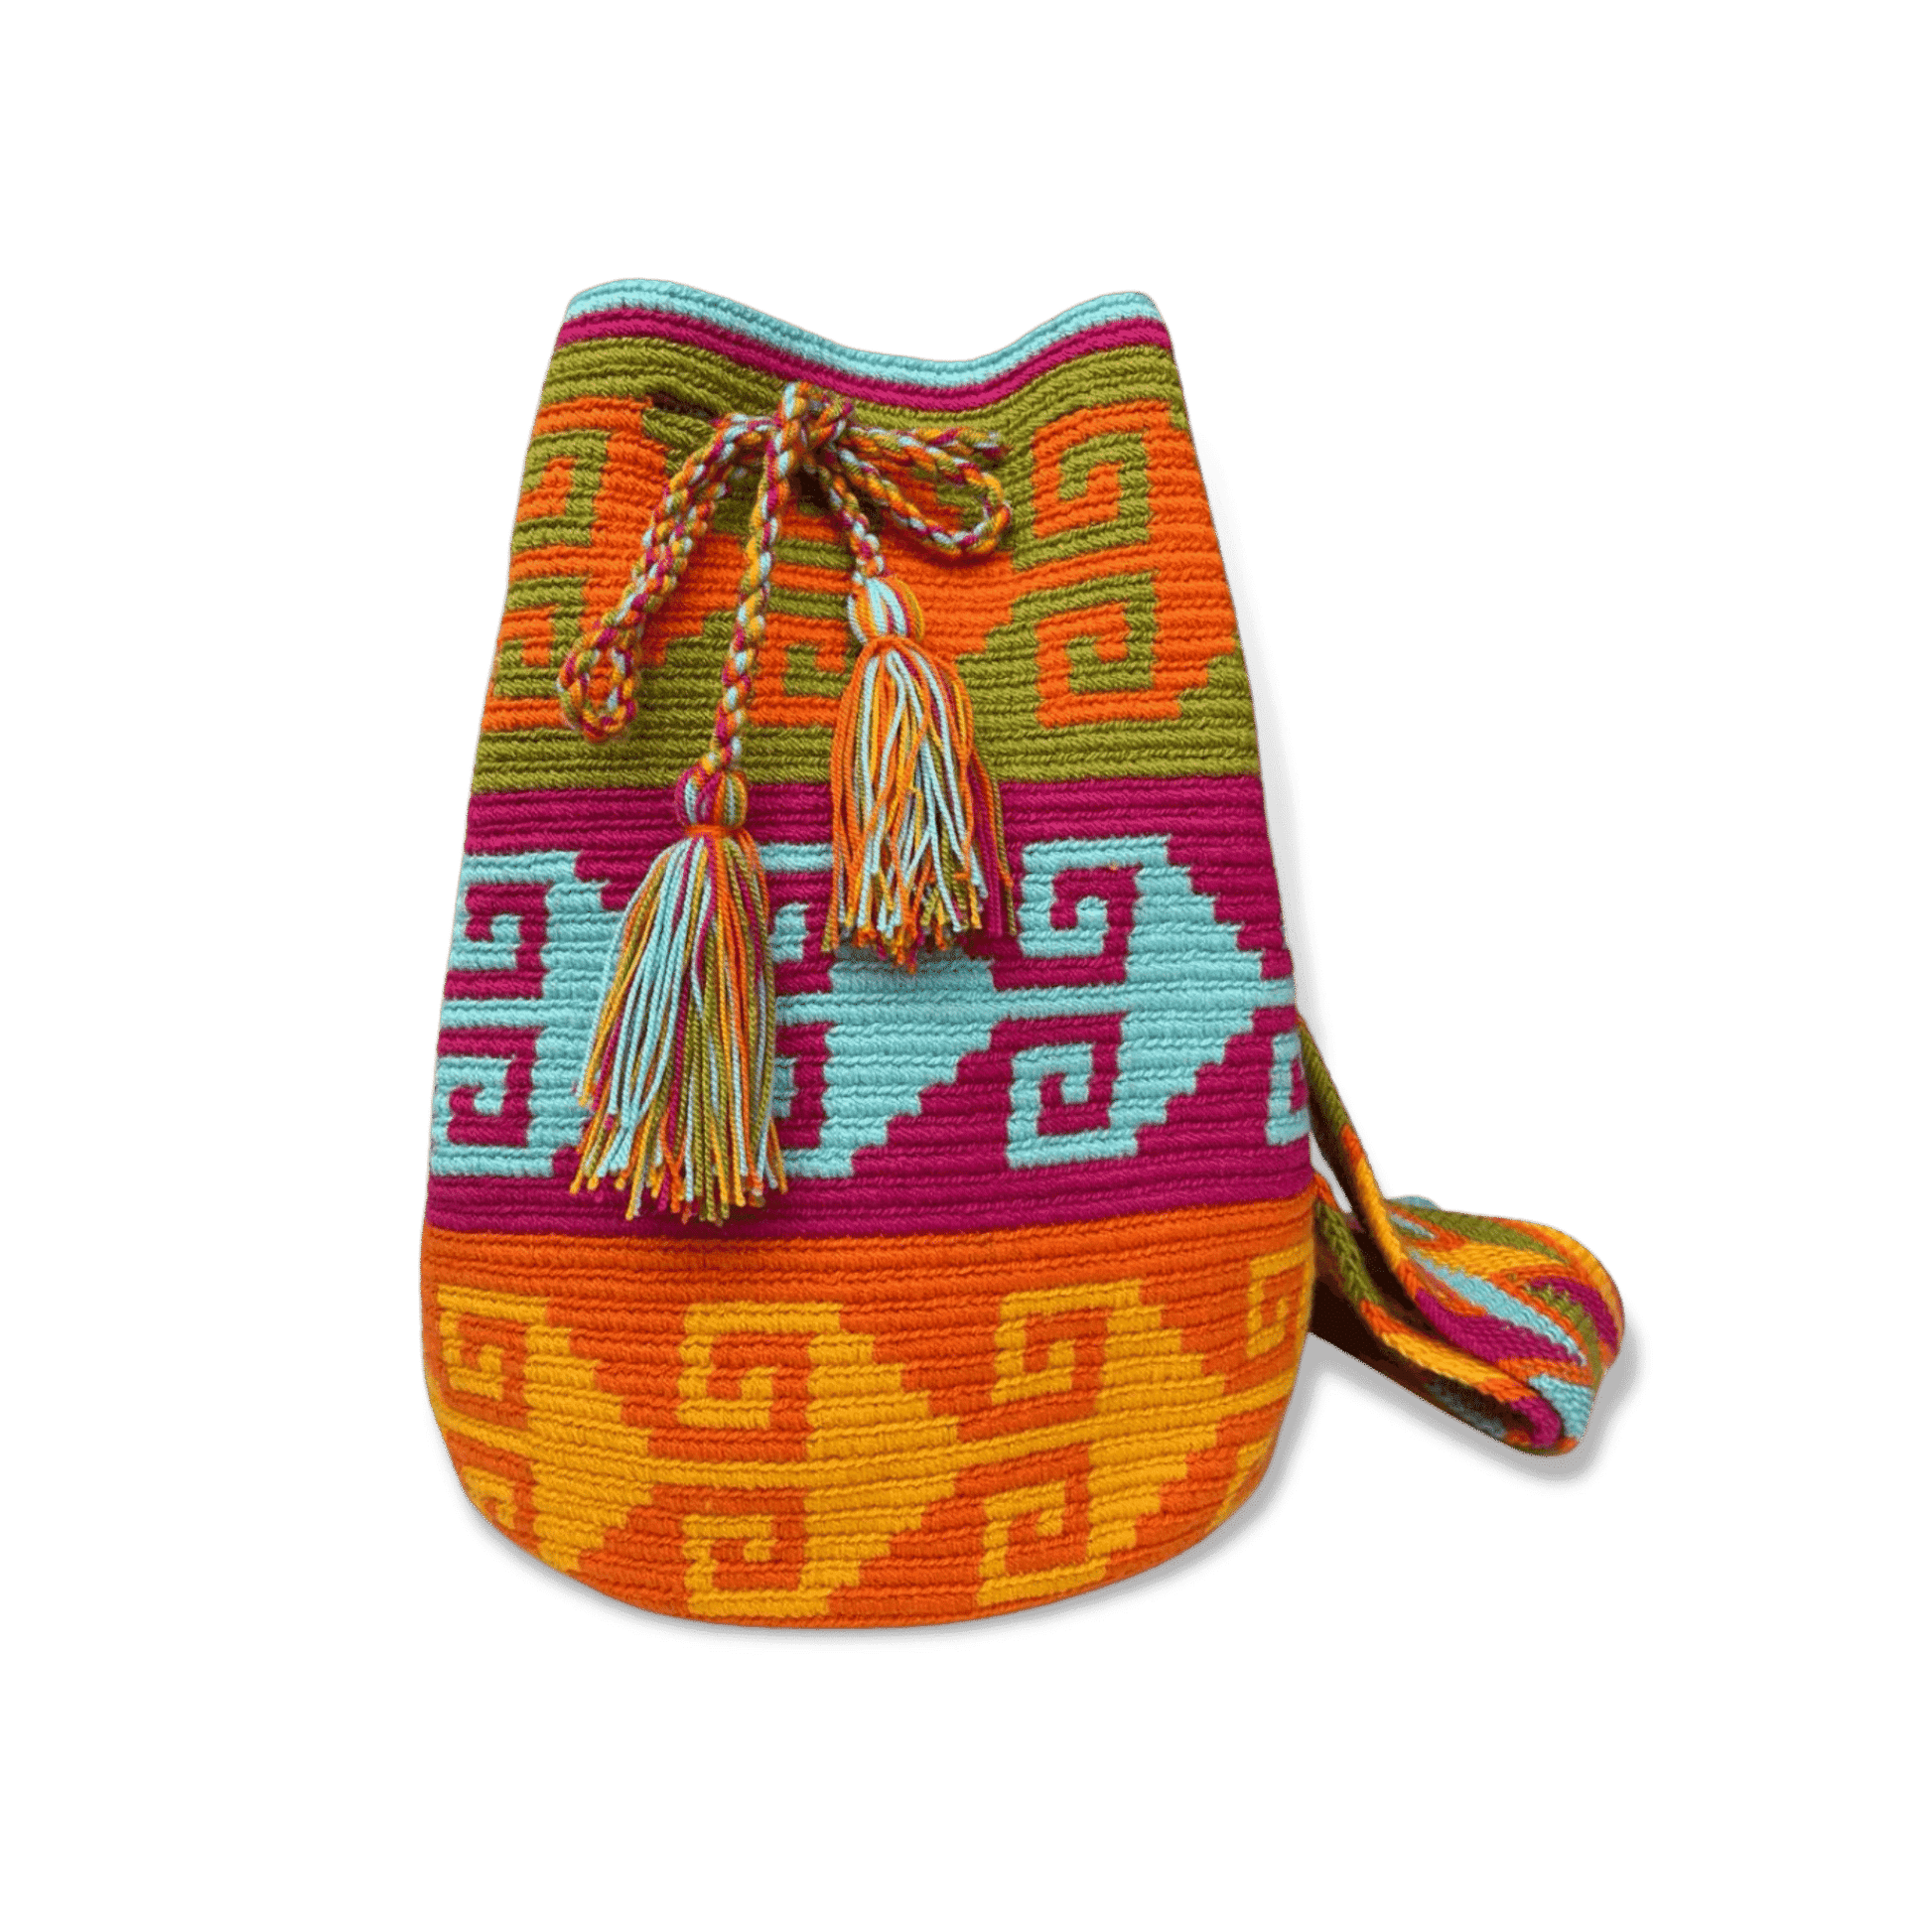 Mochila wayuu original tejida a mano con un diseño precolombino de colores vivos